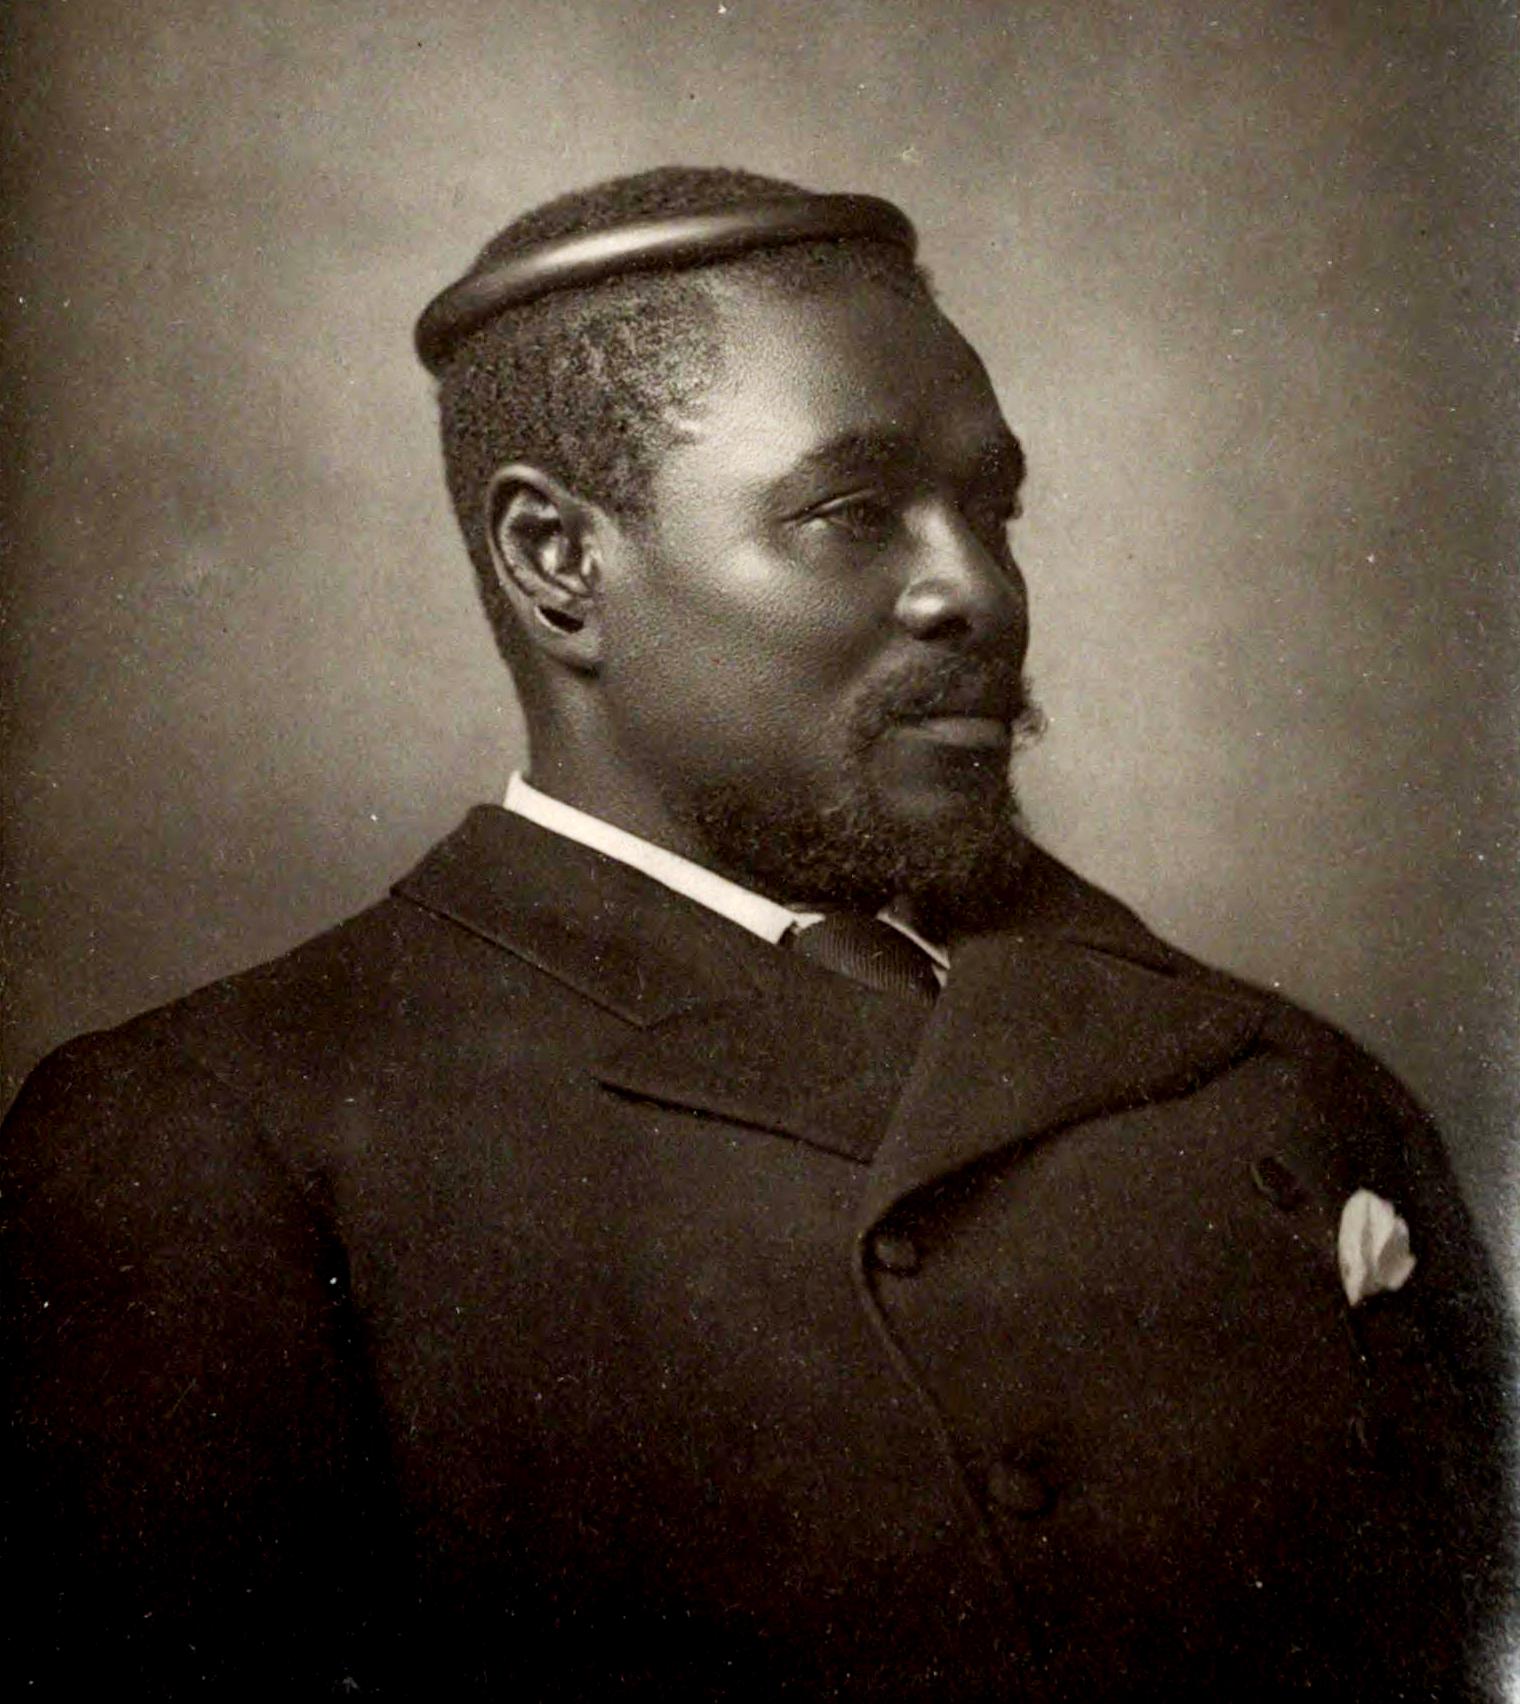 Cetshwayo kaMpande - Zulu King